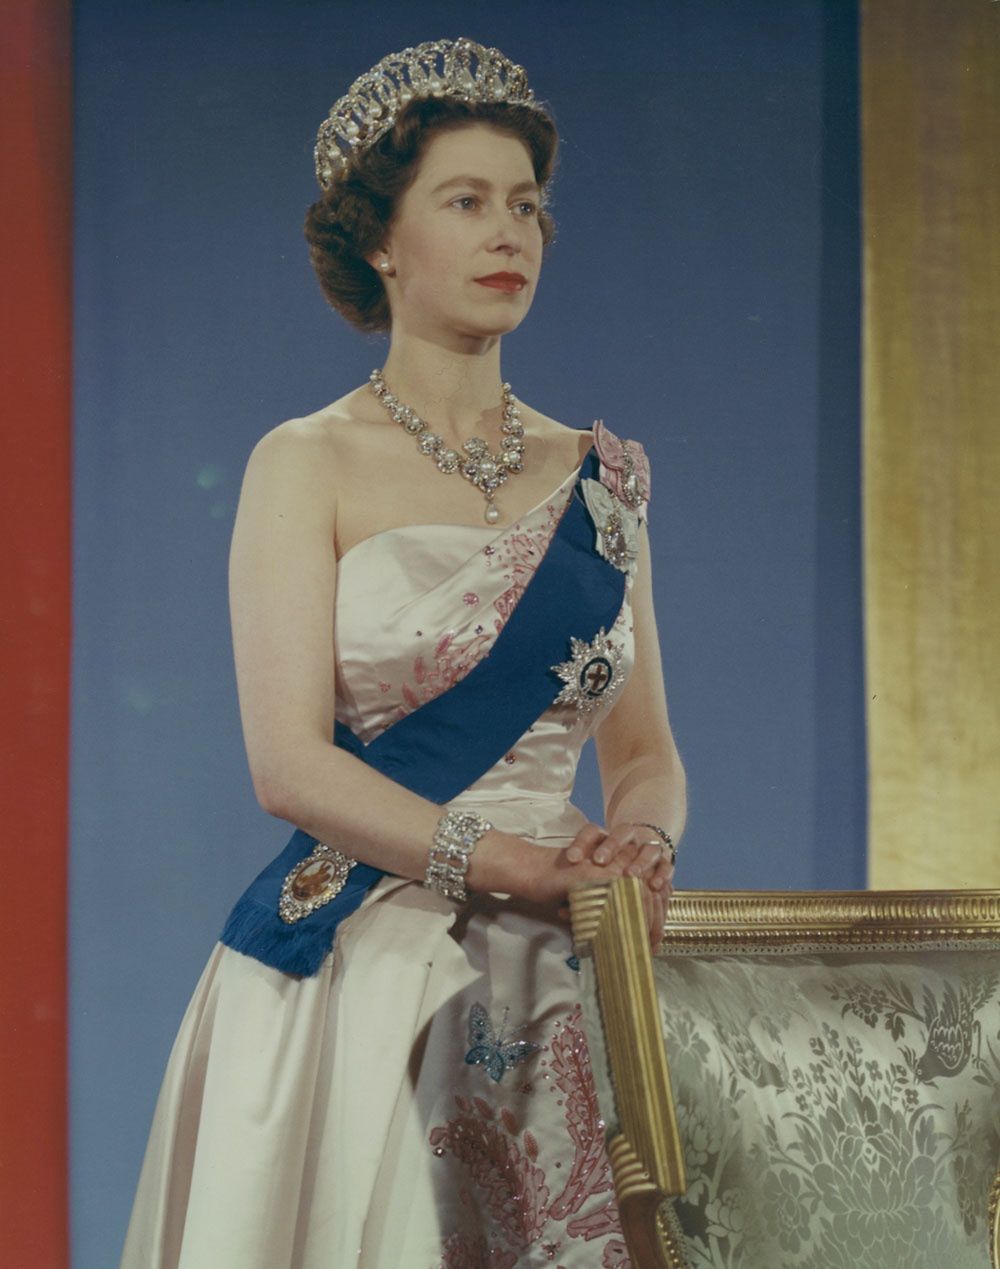 Oficjalny portret królowej Elżbiety II z 1959 roku (Library and Archives Canada/CC BY 2.0)